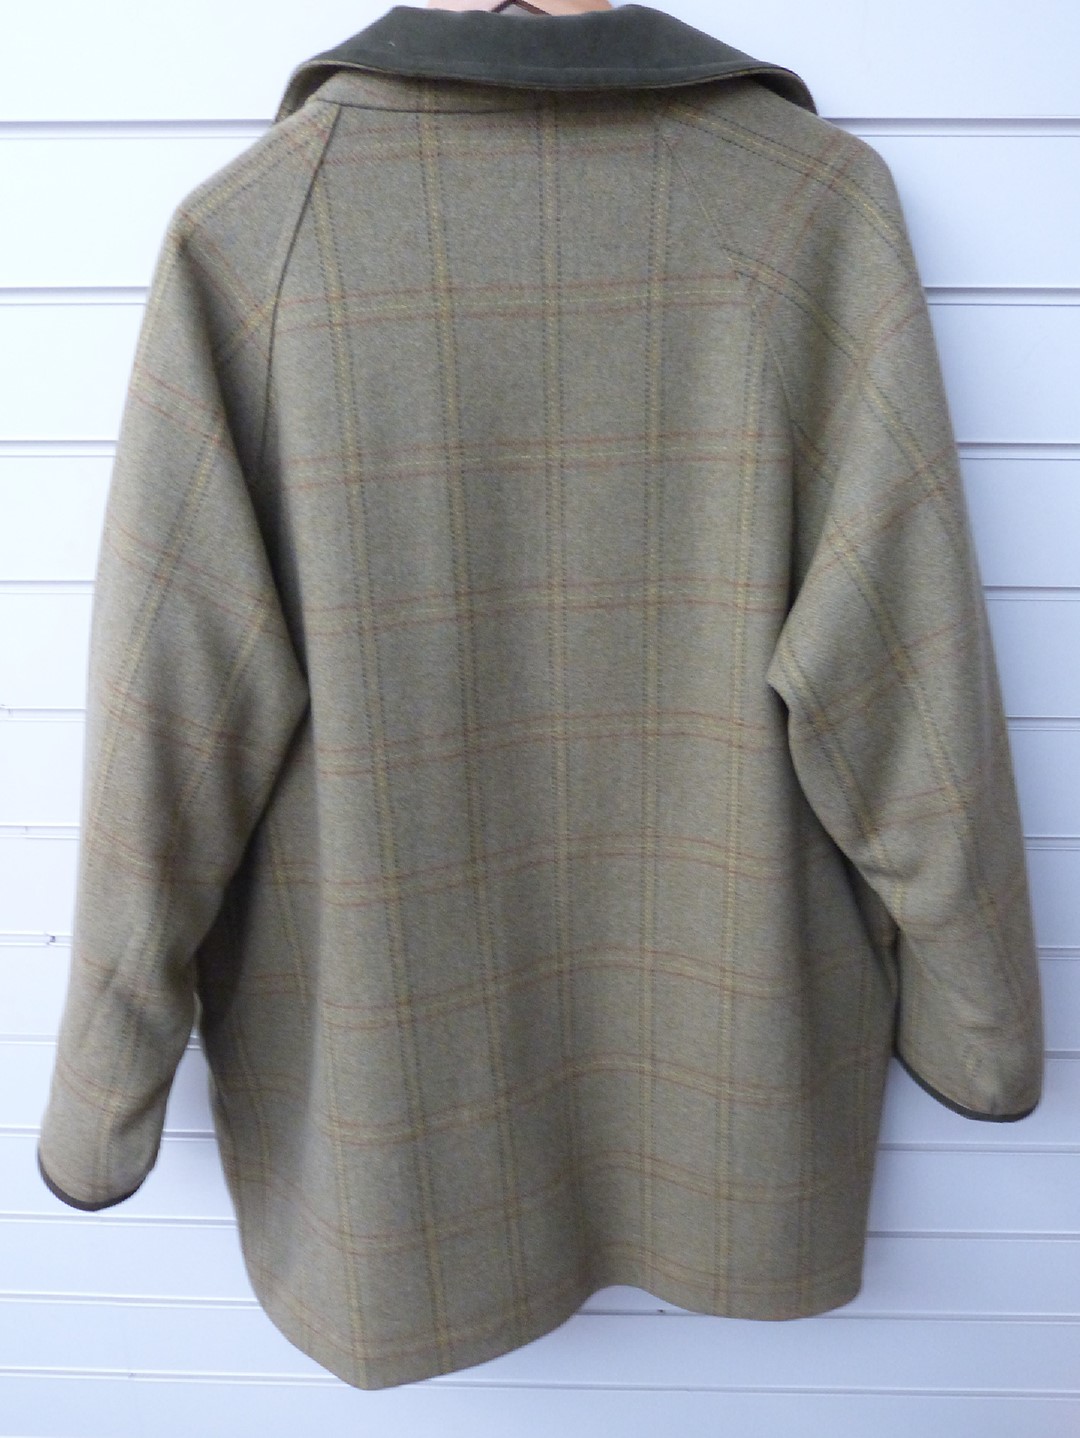 Barbour 'Double Twist' Merino wool gentleman's tweed field coat, size L - Image 4 of 4